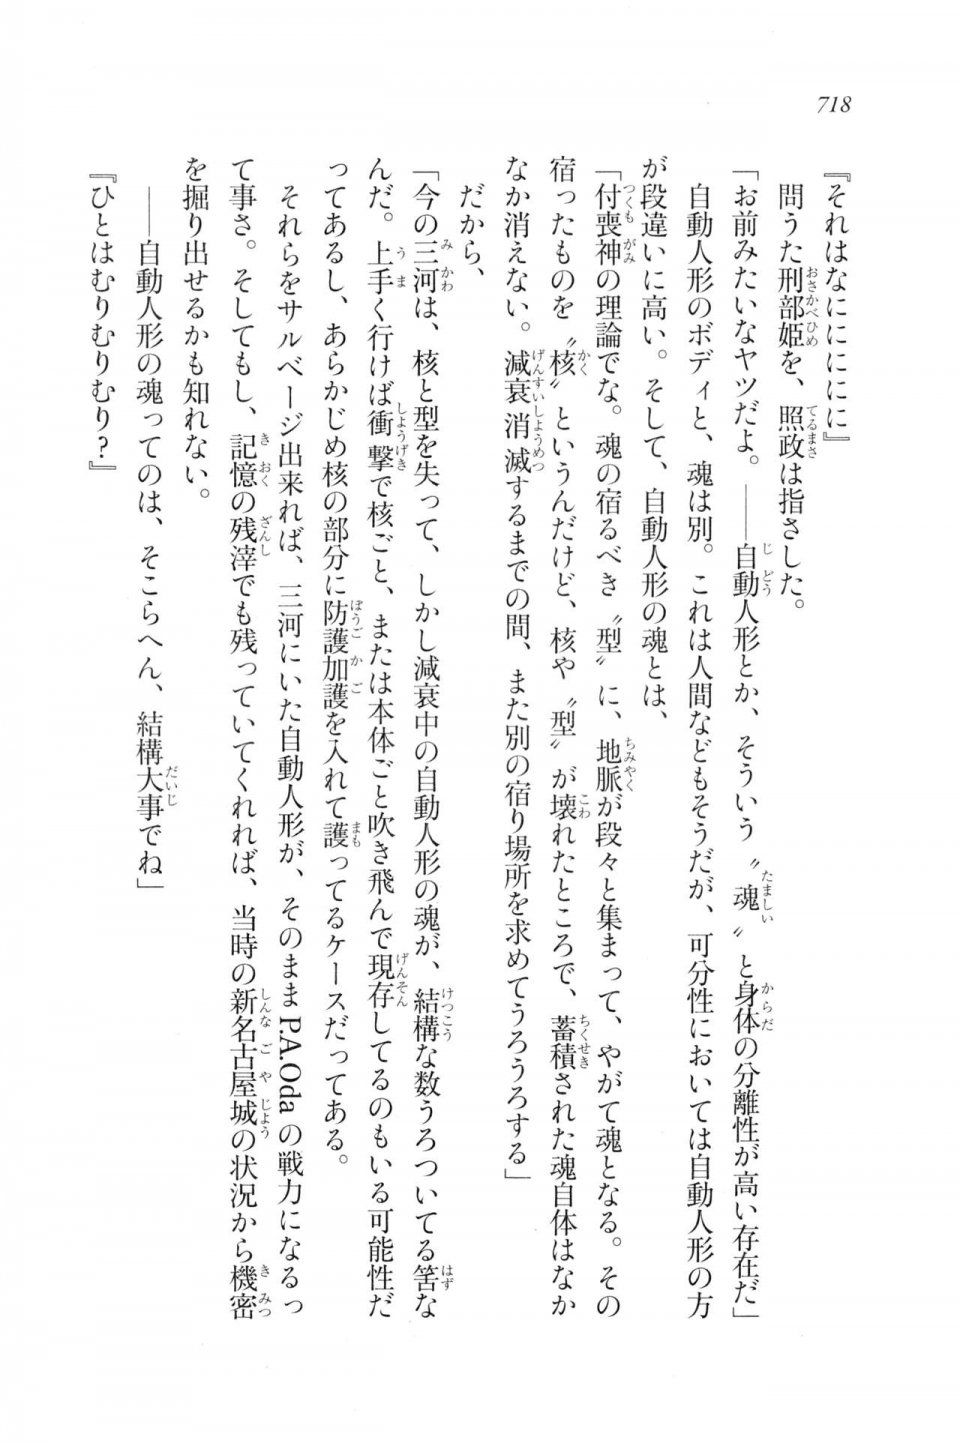 Kyoukai Senjou no Horizon LN Vol 20(8B) - Photo #718